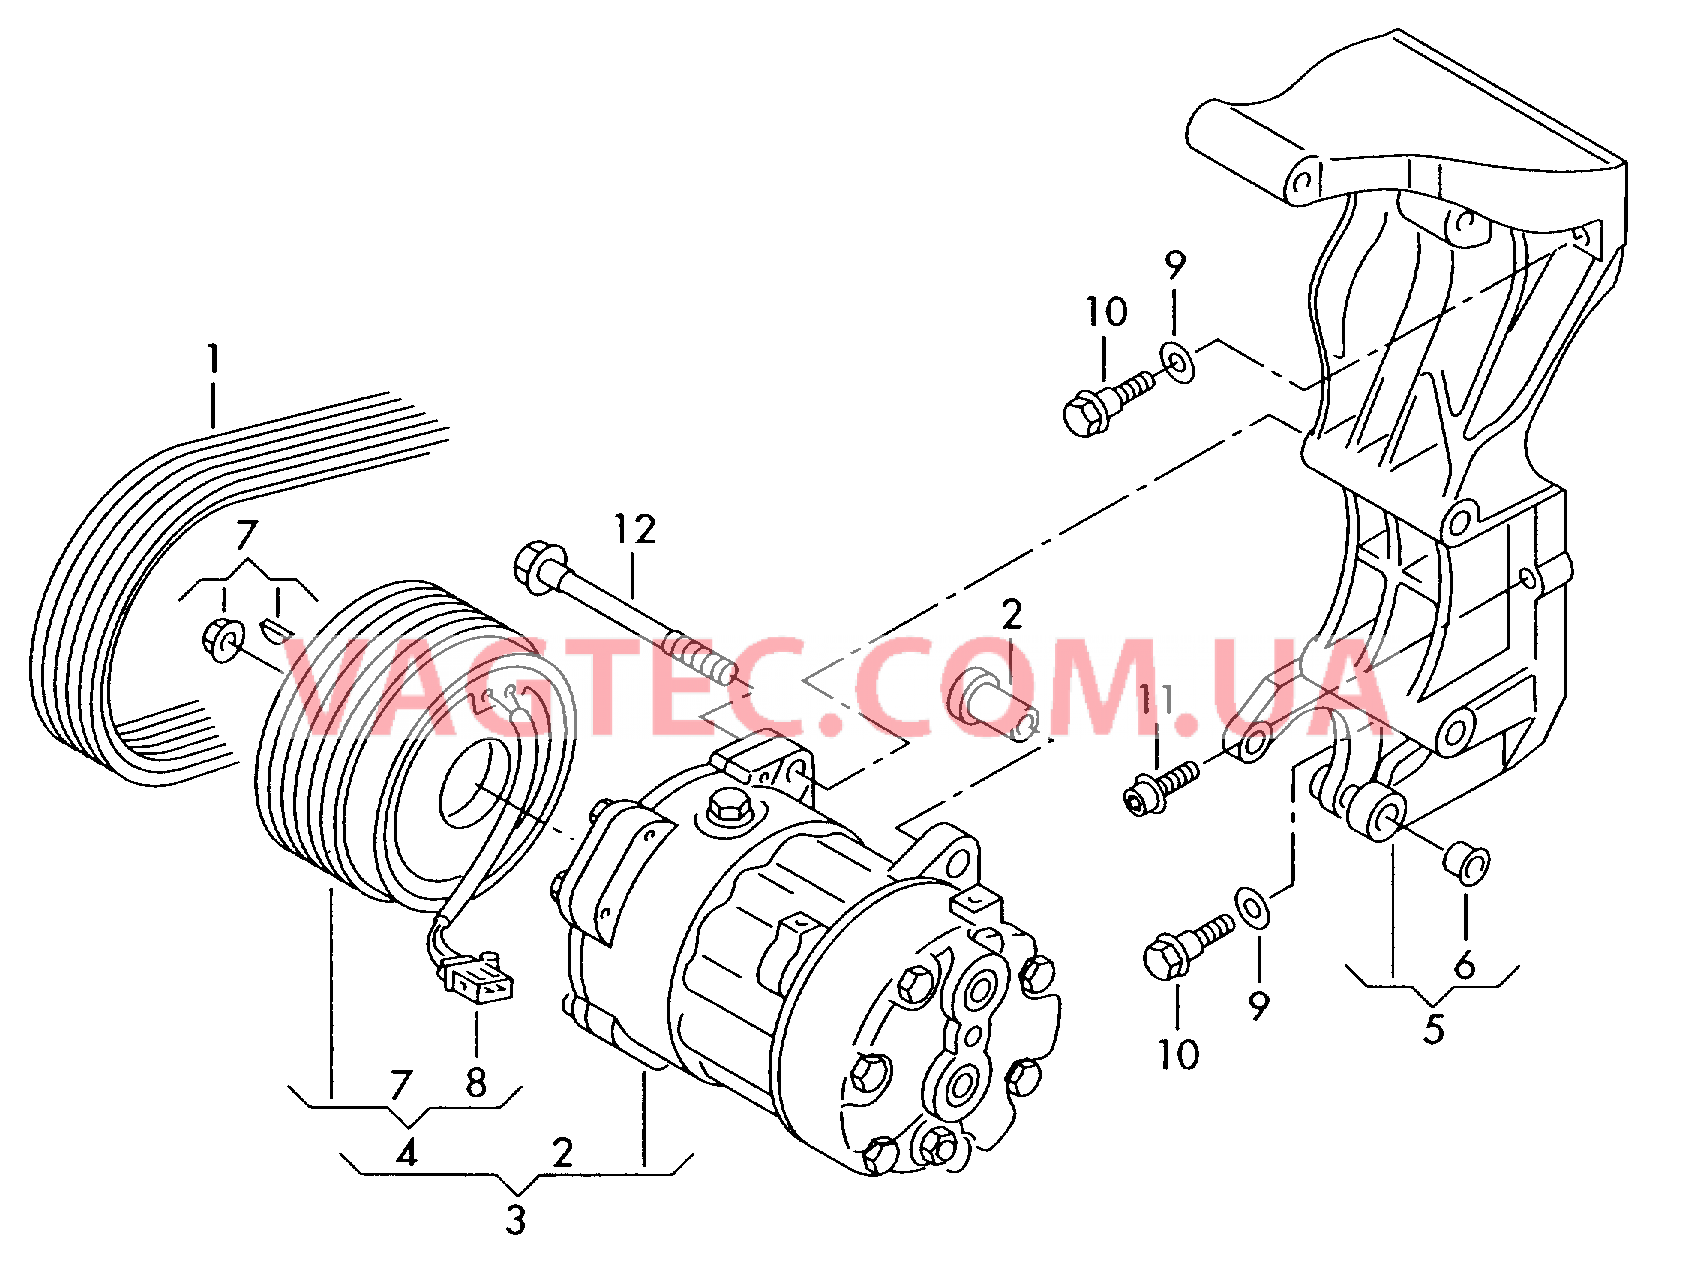 Компрессор климатической уст. Электромагнитная муфта Кронштейн генератора и компрессора кондиционера  для VOLKSWAGEN Transporter 2003-1